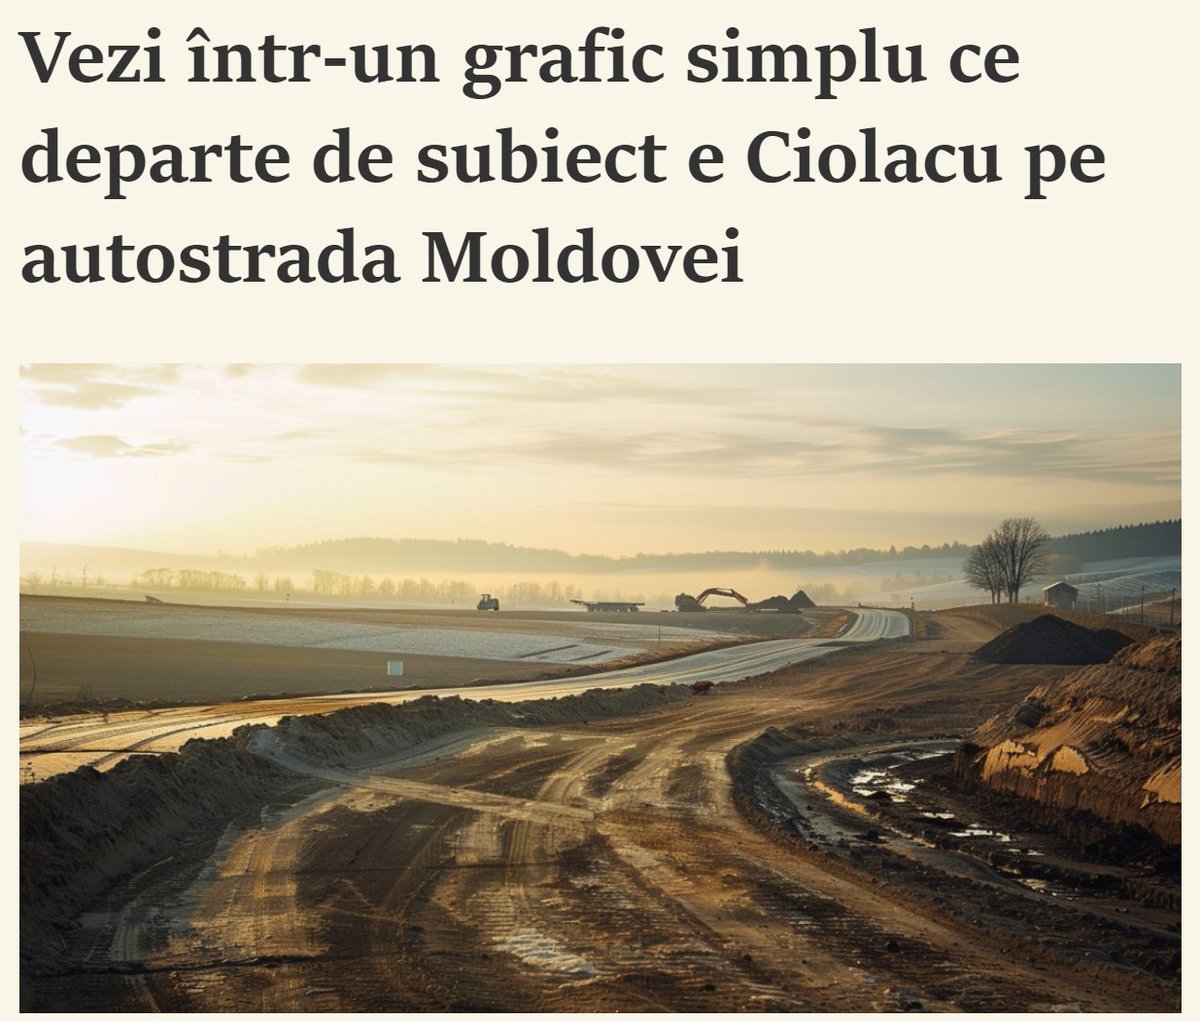 𝐕𝐞𝐳𝐢 𝐢̂𝐧𝐭𝐫-𝐮𝐧 𝐠𝐫𝐚𝐟𝐢𝐜 𝐬𝐢𝐦𝐩𝐥𝐮 𝐜𝐞 𝐝𝐞𝐩𝐚𝐫𝐭𝐞 𝐝𝐞 𝐬𝐮𝐛𝐢𝐞𝐜𝐭 𝐞 𝐂𝐢𝐨𝐥𝐚𝐜𝐮 𝐩𝐞 𝐚𝐮𝐭𝐨𝐬𝐭𝐫𝐚𝐝𝐚 𝐌𝐨𝐥𝐝𝐨𝐯𝐞𝐢
'Ați mers cumva pe autostrada Moldova? Că se tot laudă Ciolacu cu ea. Potrivit calendarului din PNRR, ar fi trebuit să circulați…